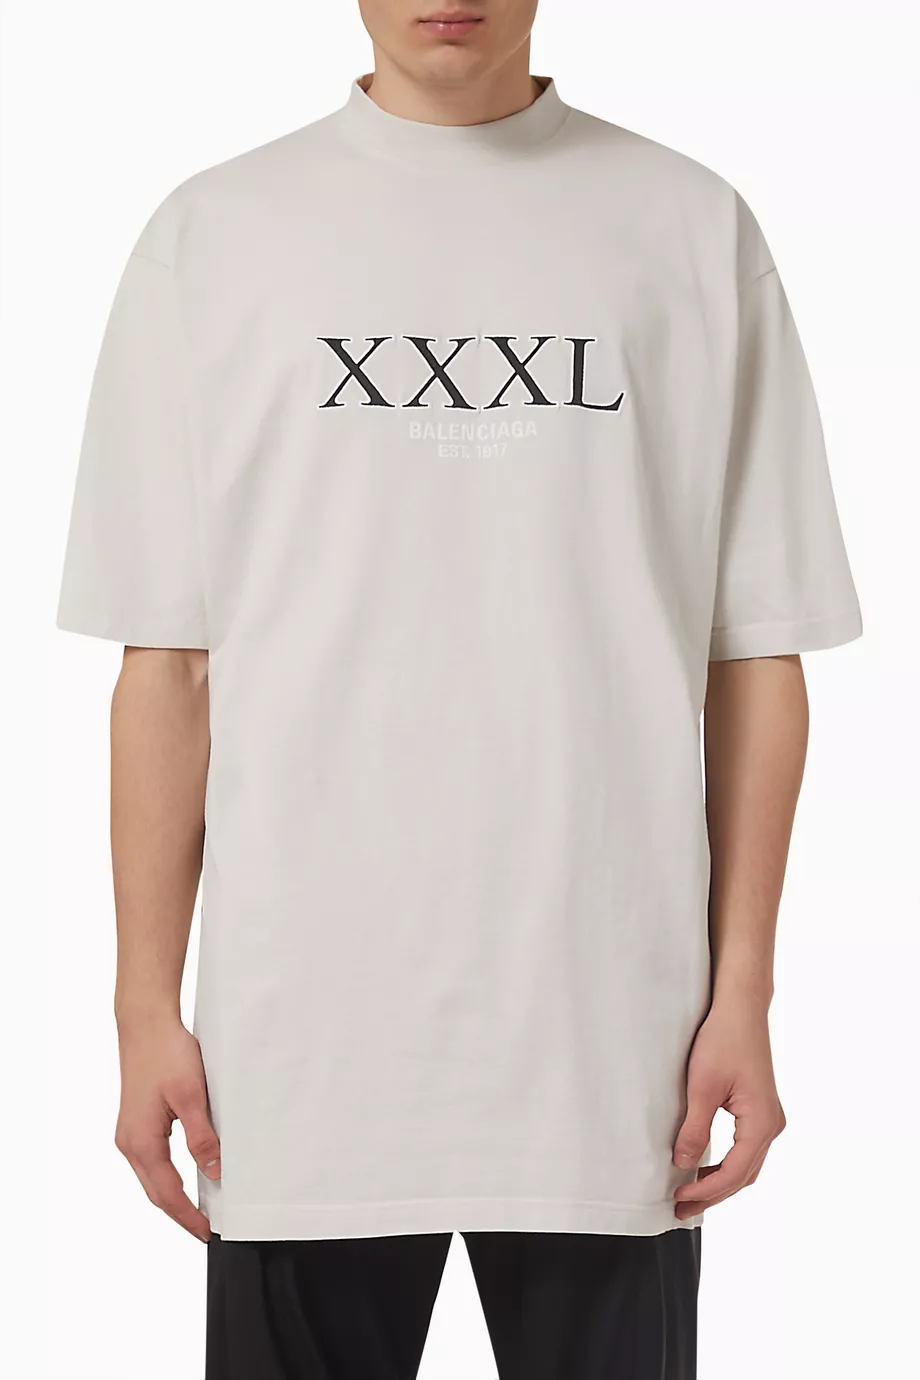 BALENCIAGA XXXL 3XL Inside out Tシャツよろしくお願い致します